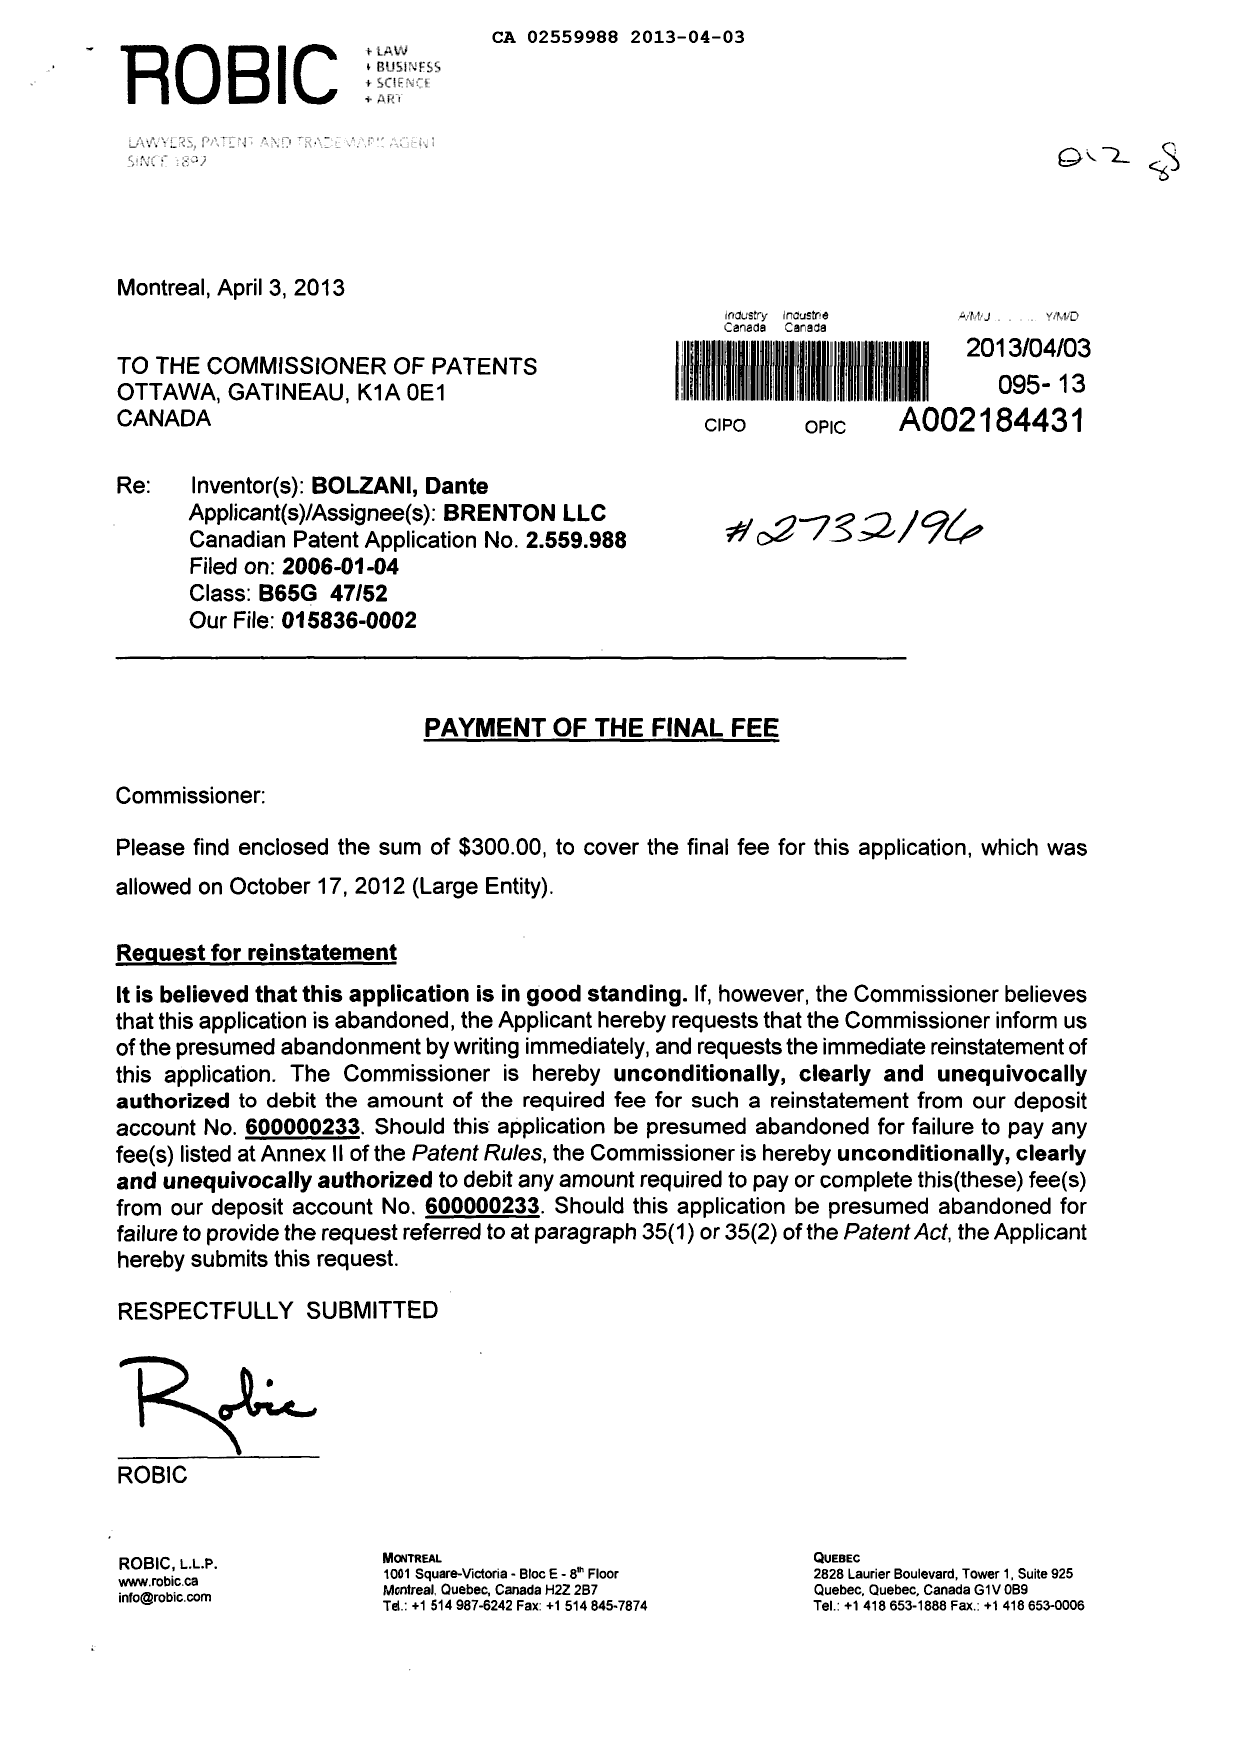 Document de brevet canadien 2559988. Correspondance 20130403. Image 1 de 2